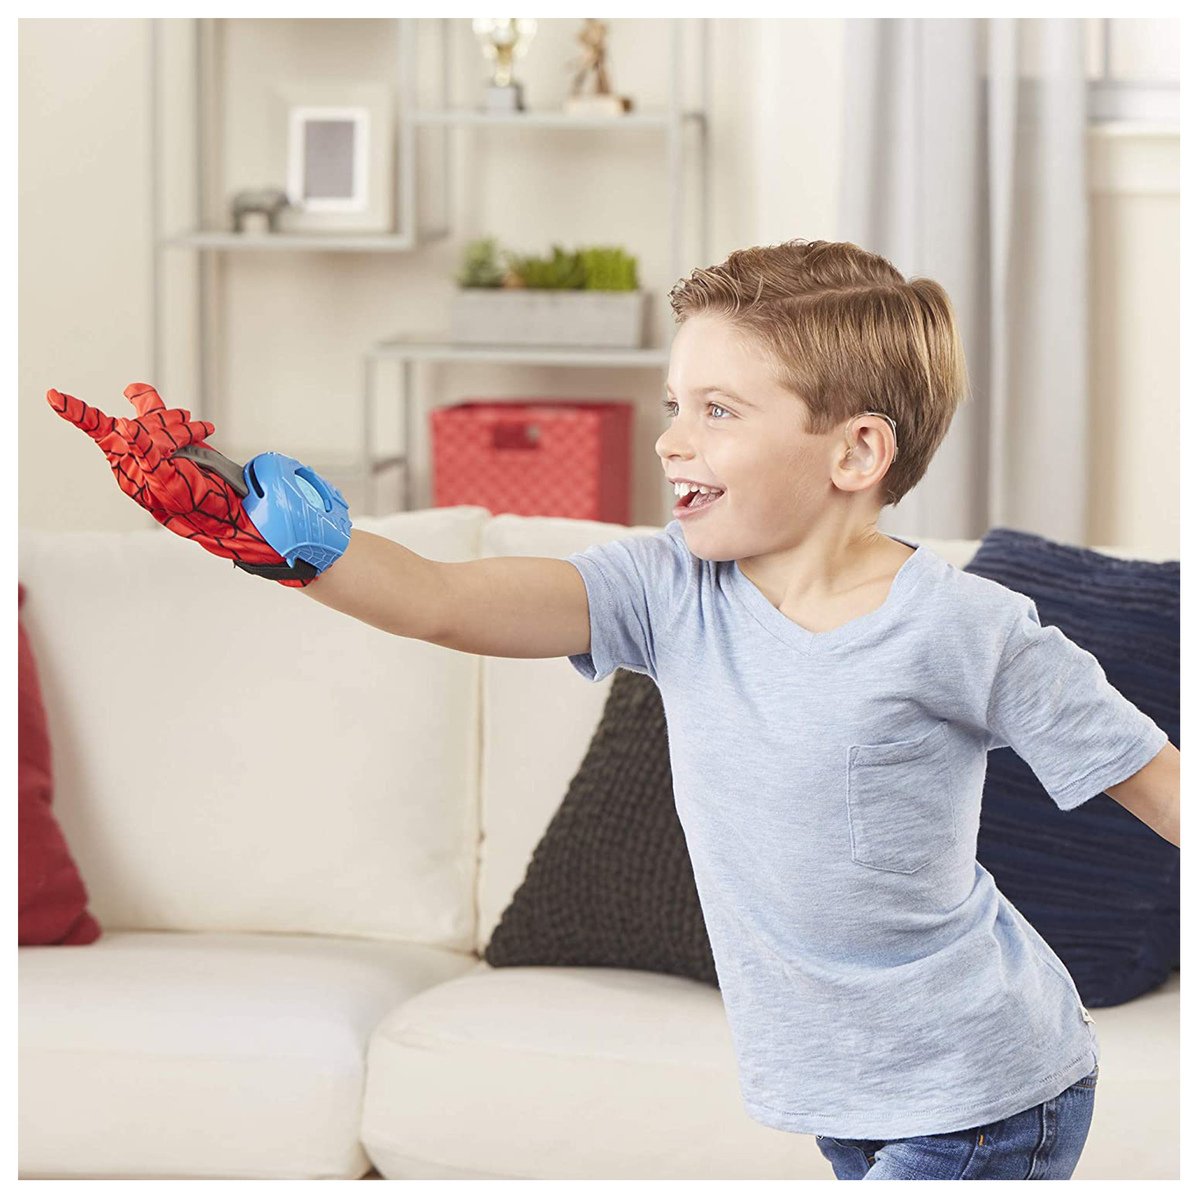 Spiderman Web Launcher Glove E3367